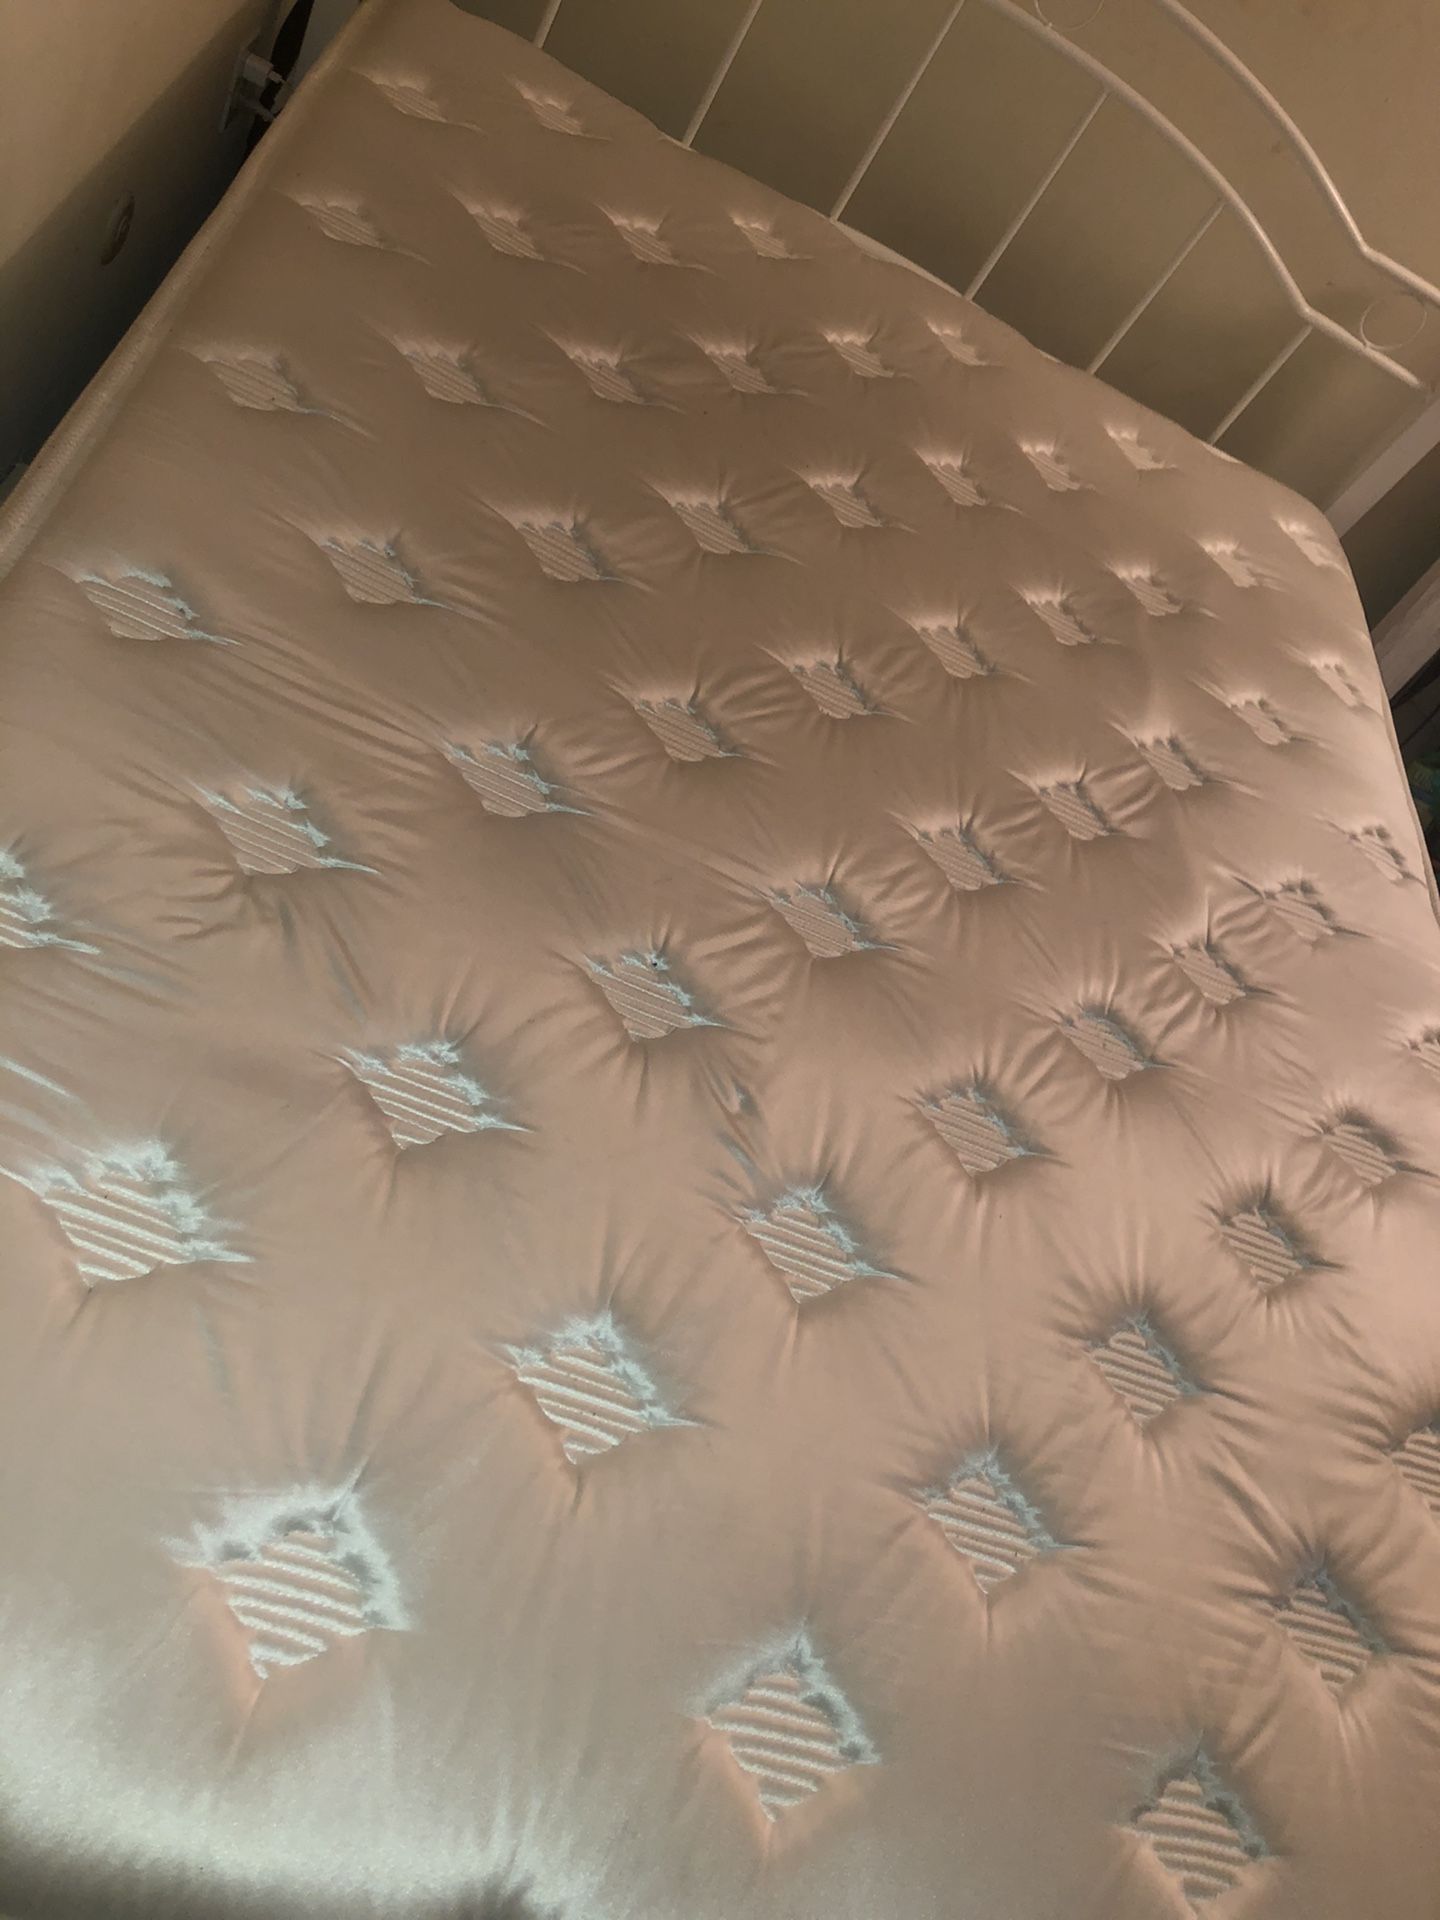 12 in Queen size mattress